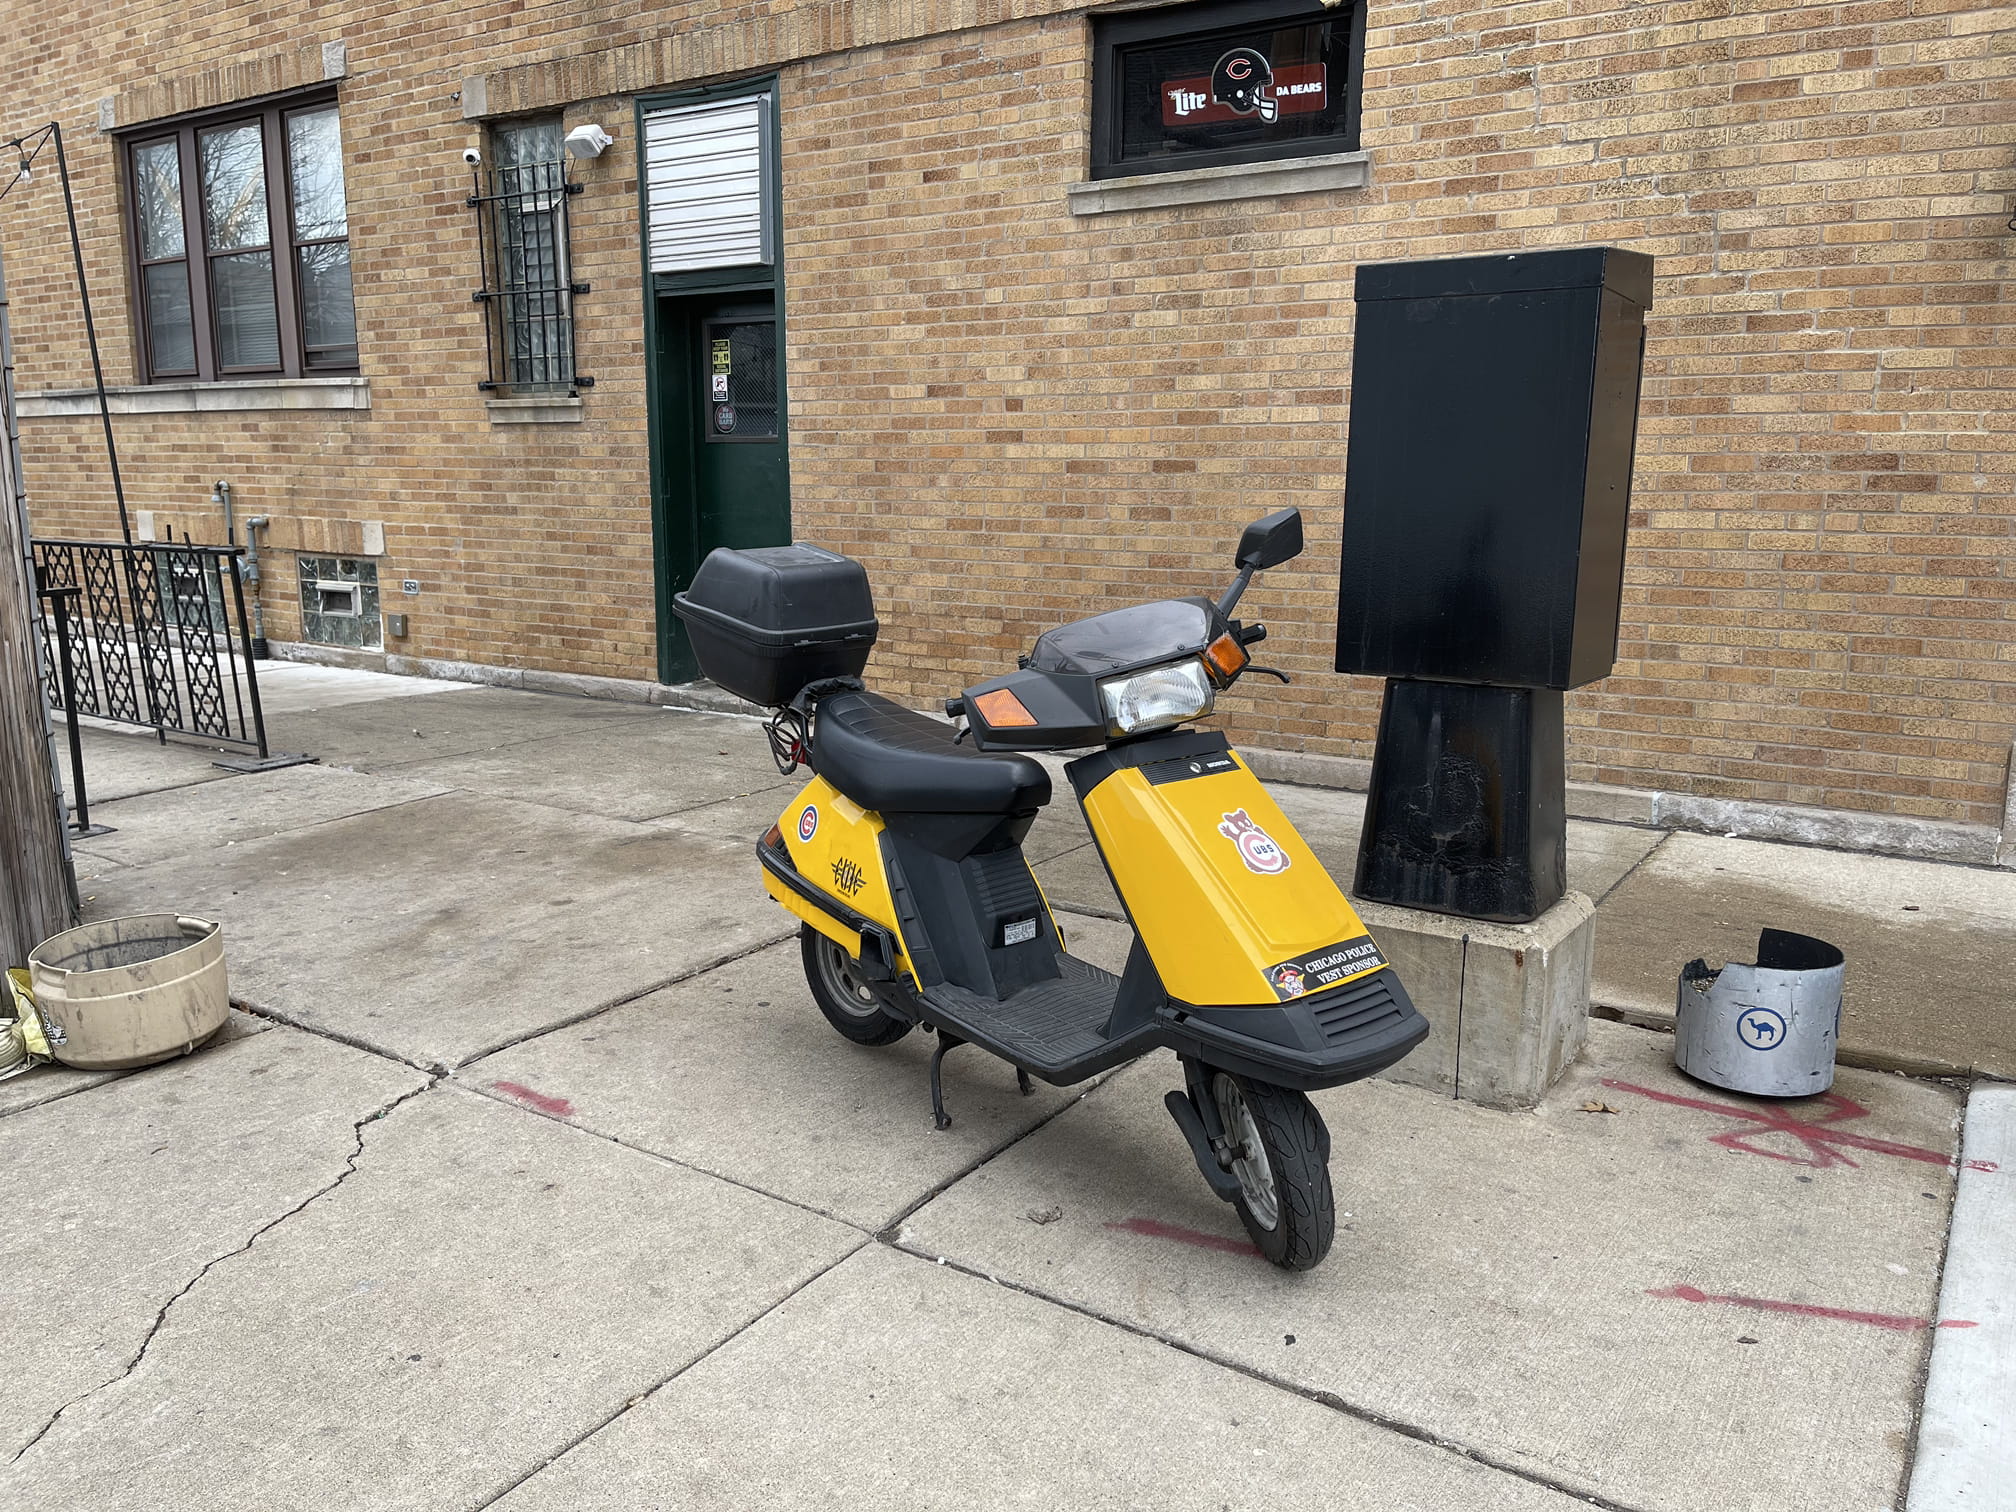 Weird honda yellow motoscooter thing